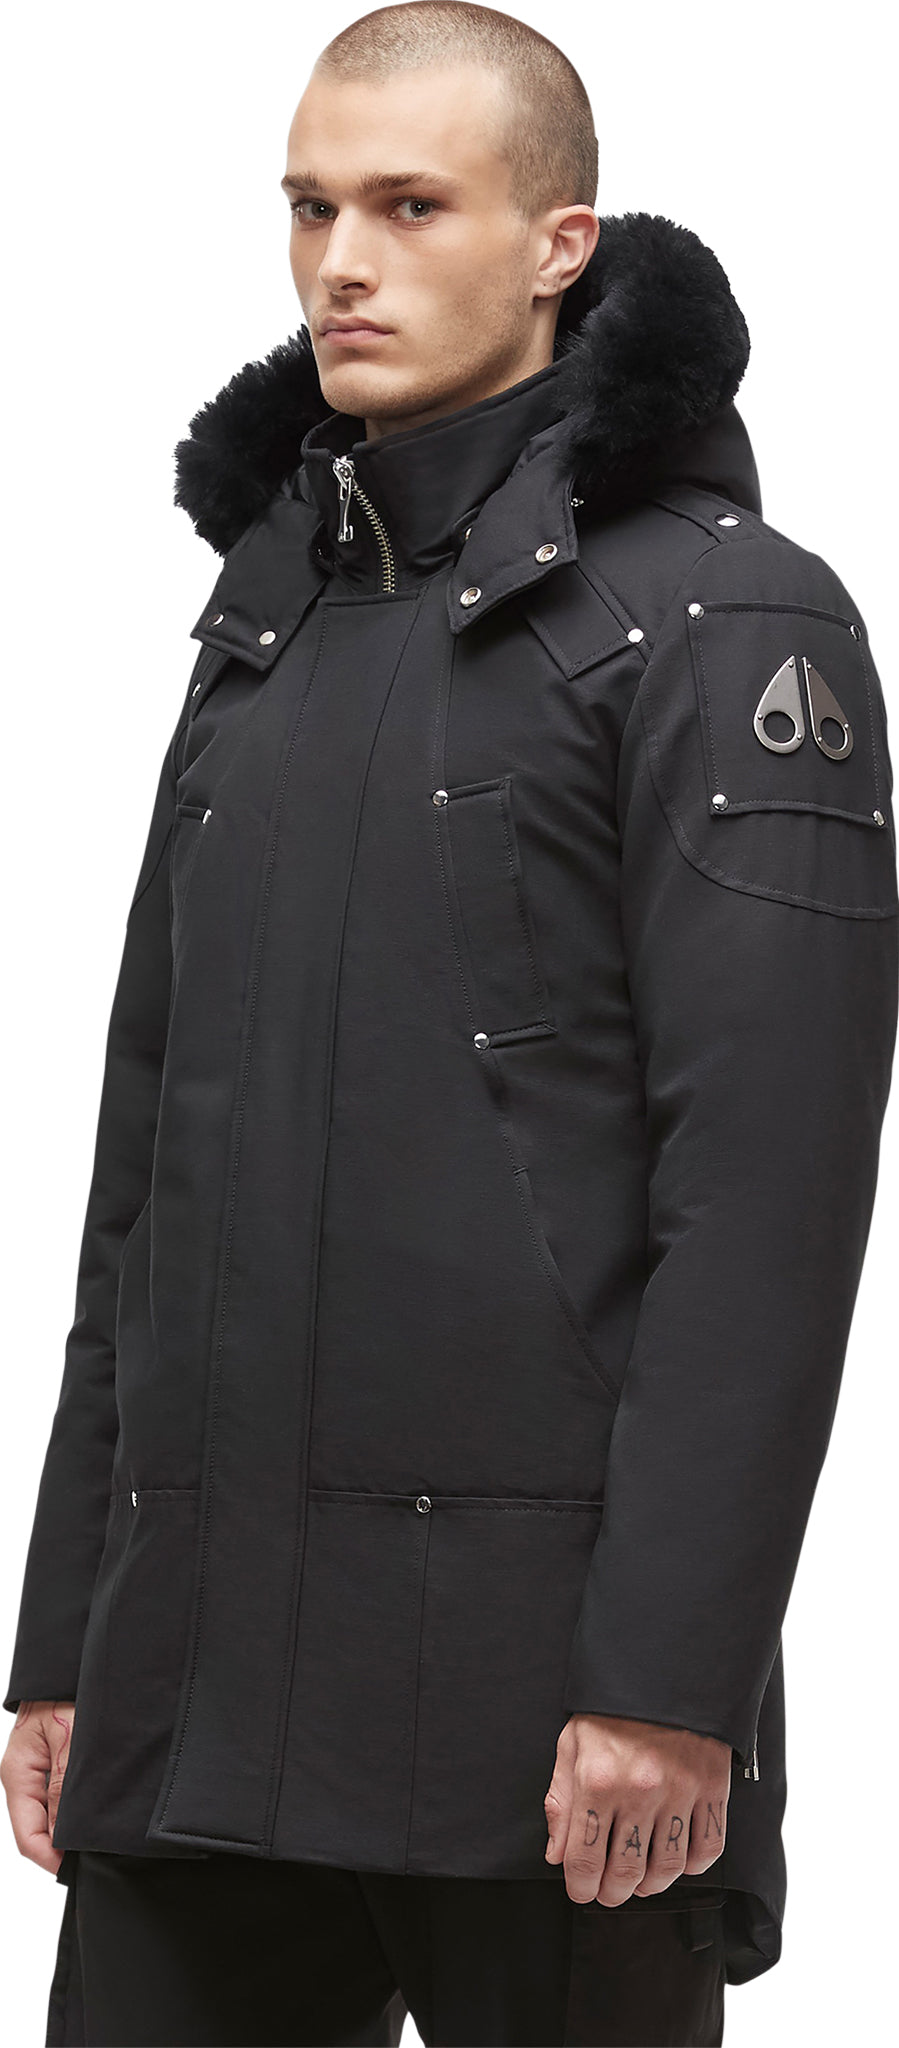 Nobis Black Neo Mid Layer Vest